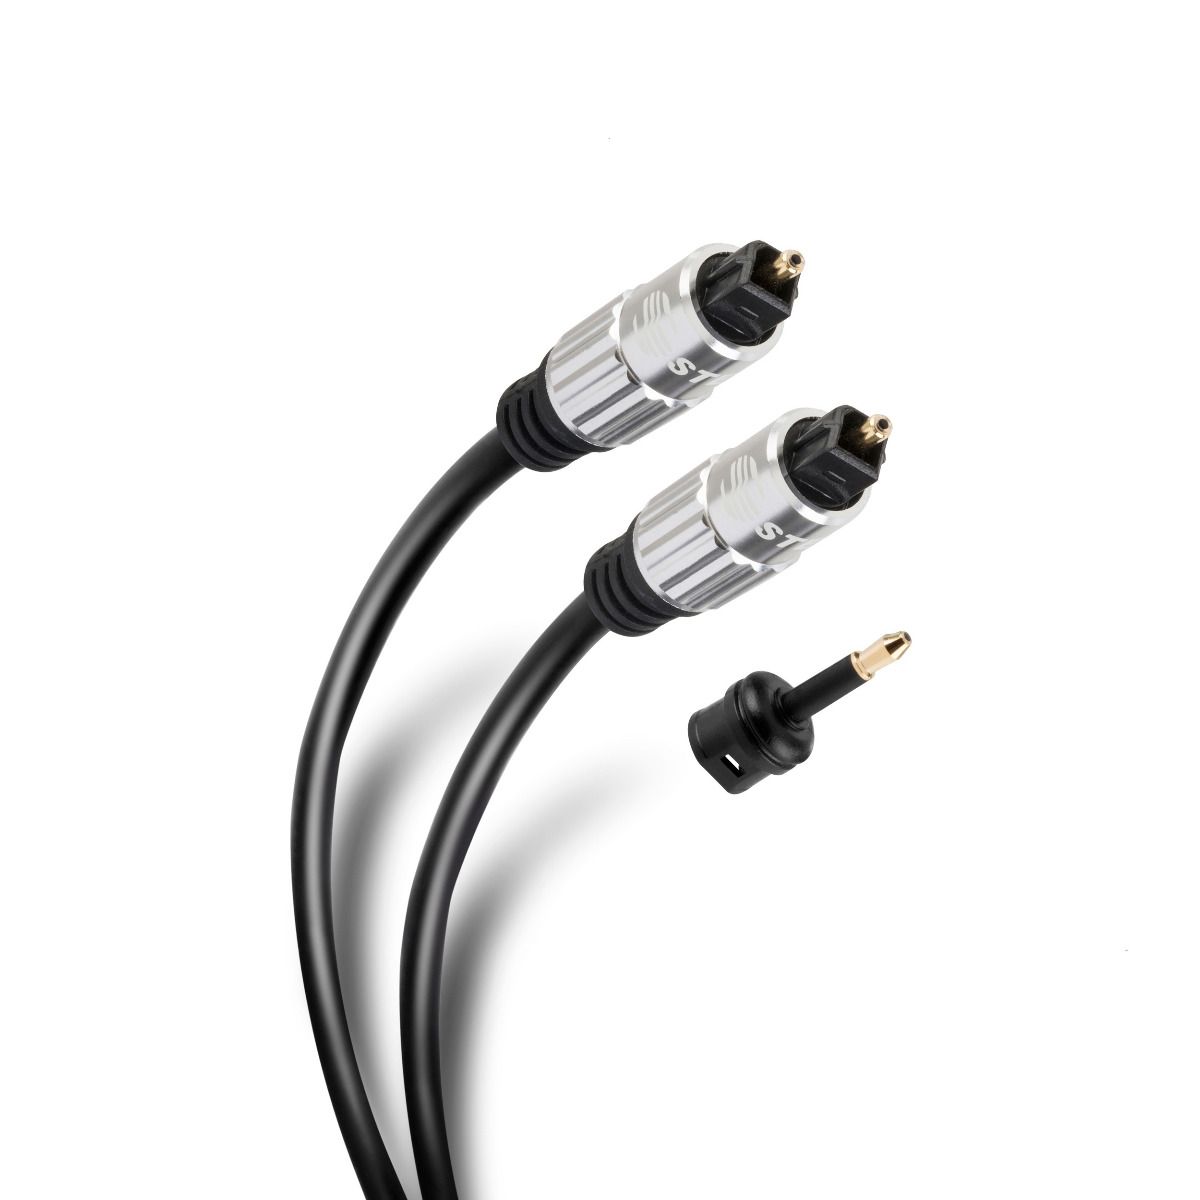 Cables de fibra óptica 【Nº1 en Precios】